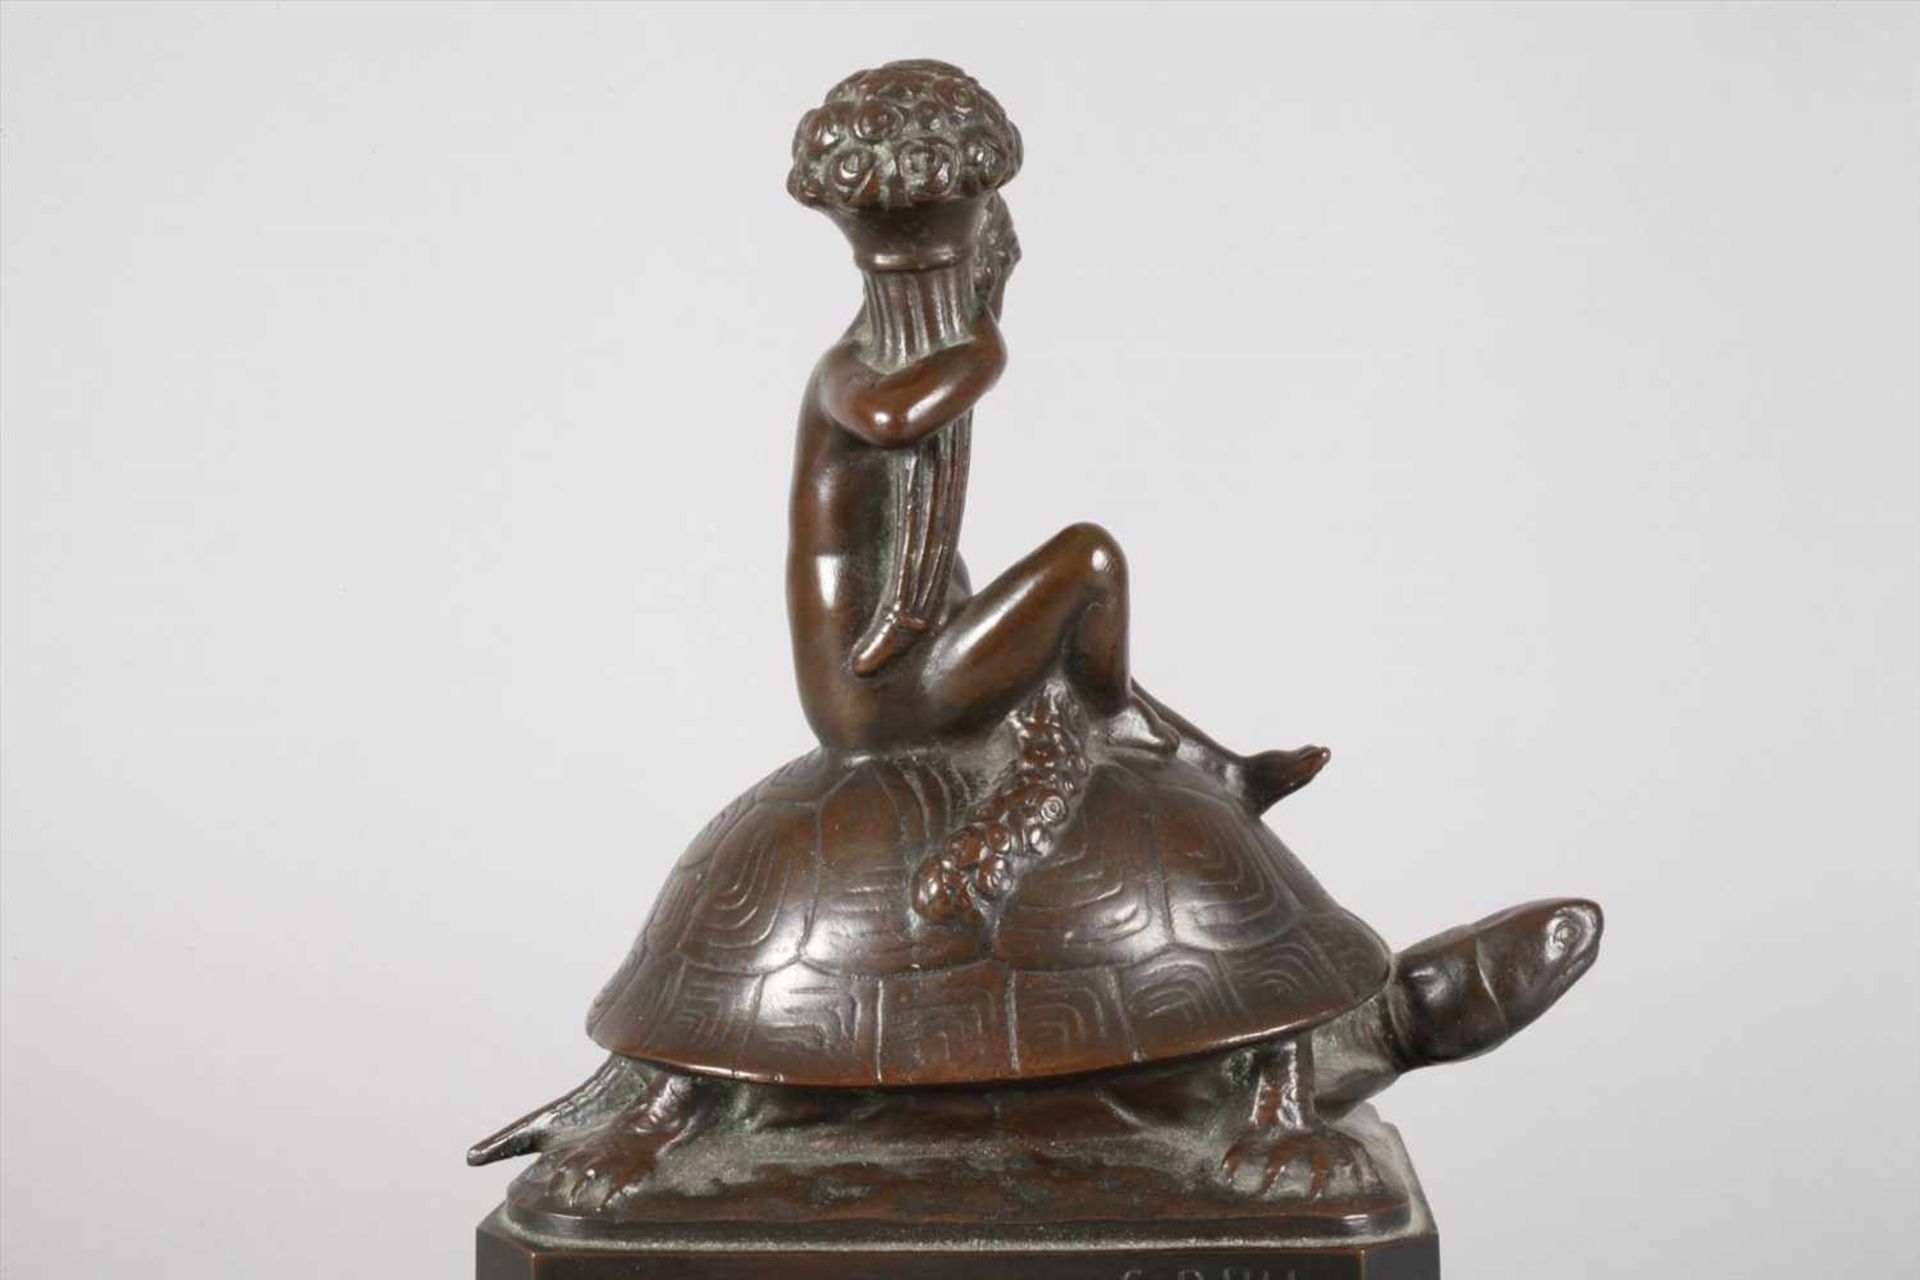 C. Bull, Mädchen auf Schildkröteum 1900, signiert, Gießerstempel Bildgießerei Lauchhammer, Bronze - Bild 3 aus 7